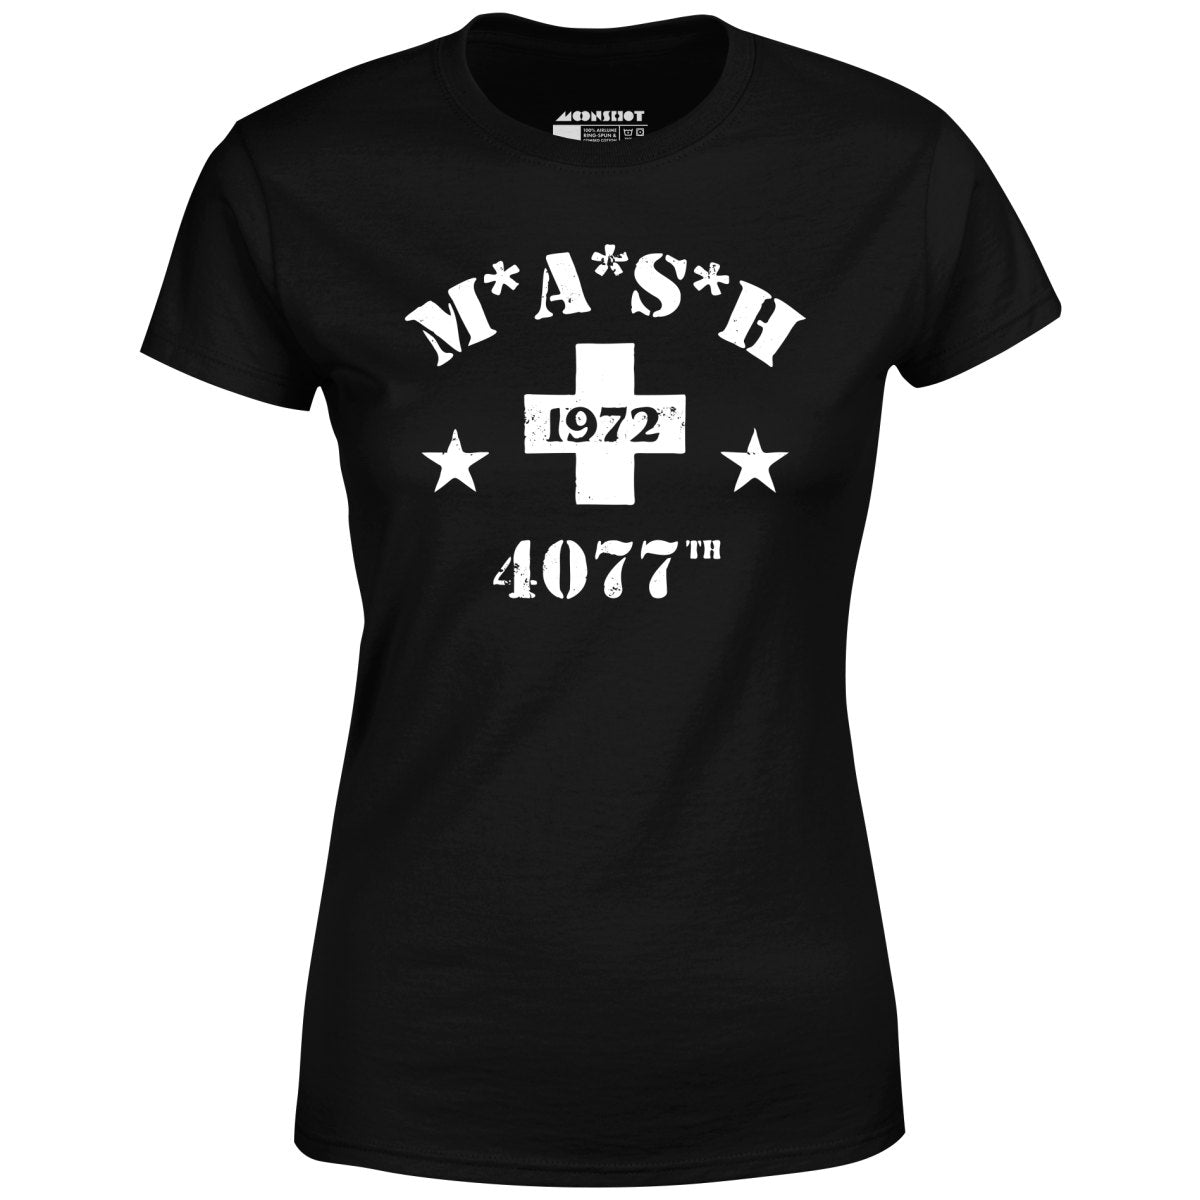 Mash 4077th - Women's T-Shirt